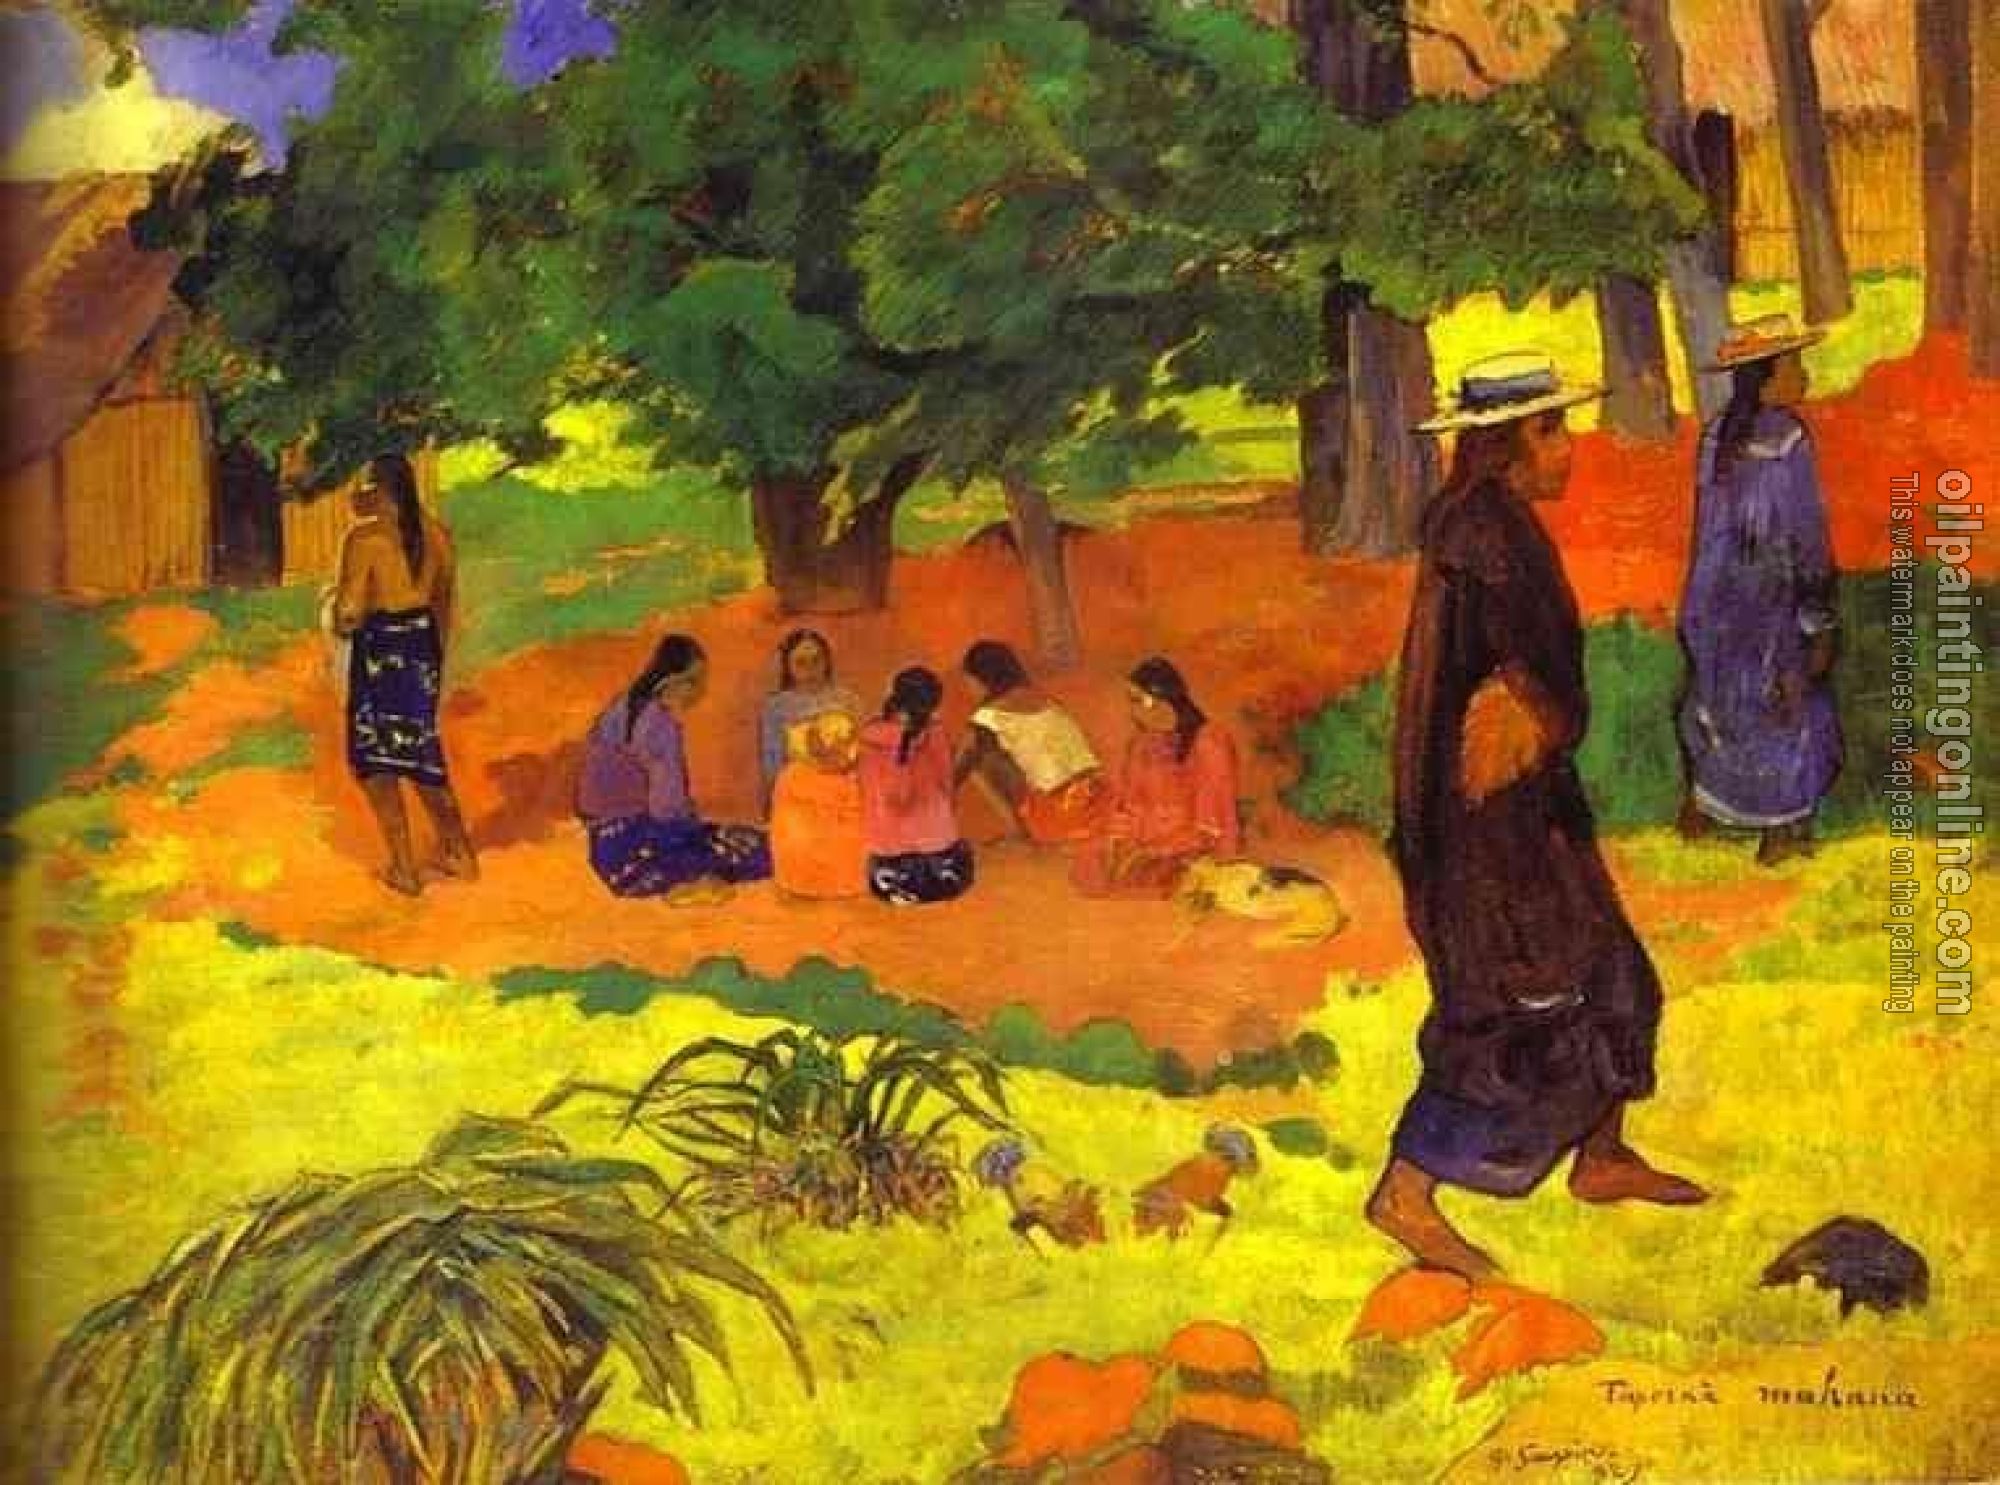 Gauguin, Paul - Taperaa Mahana